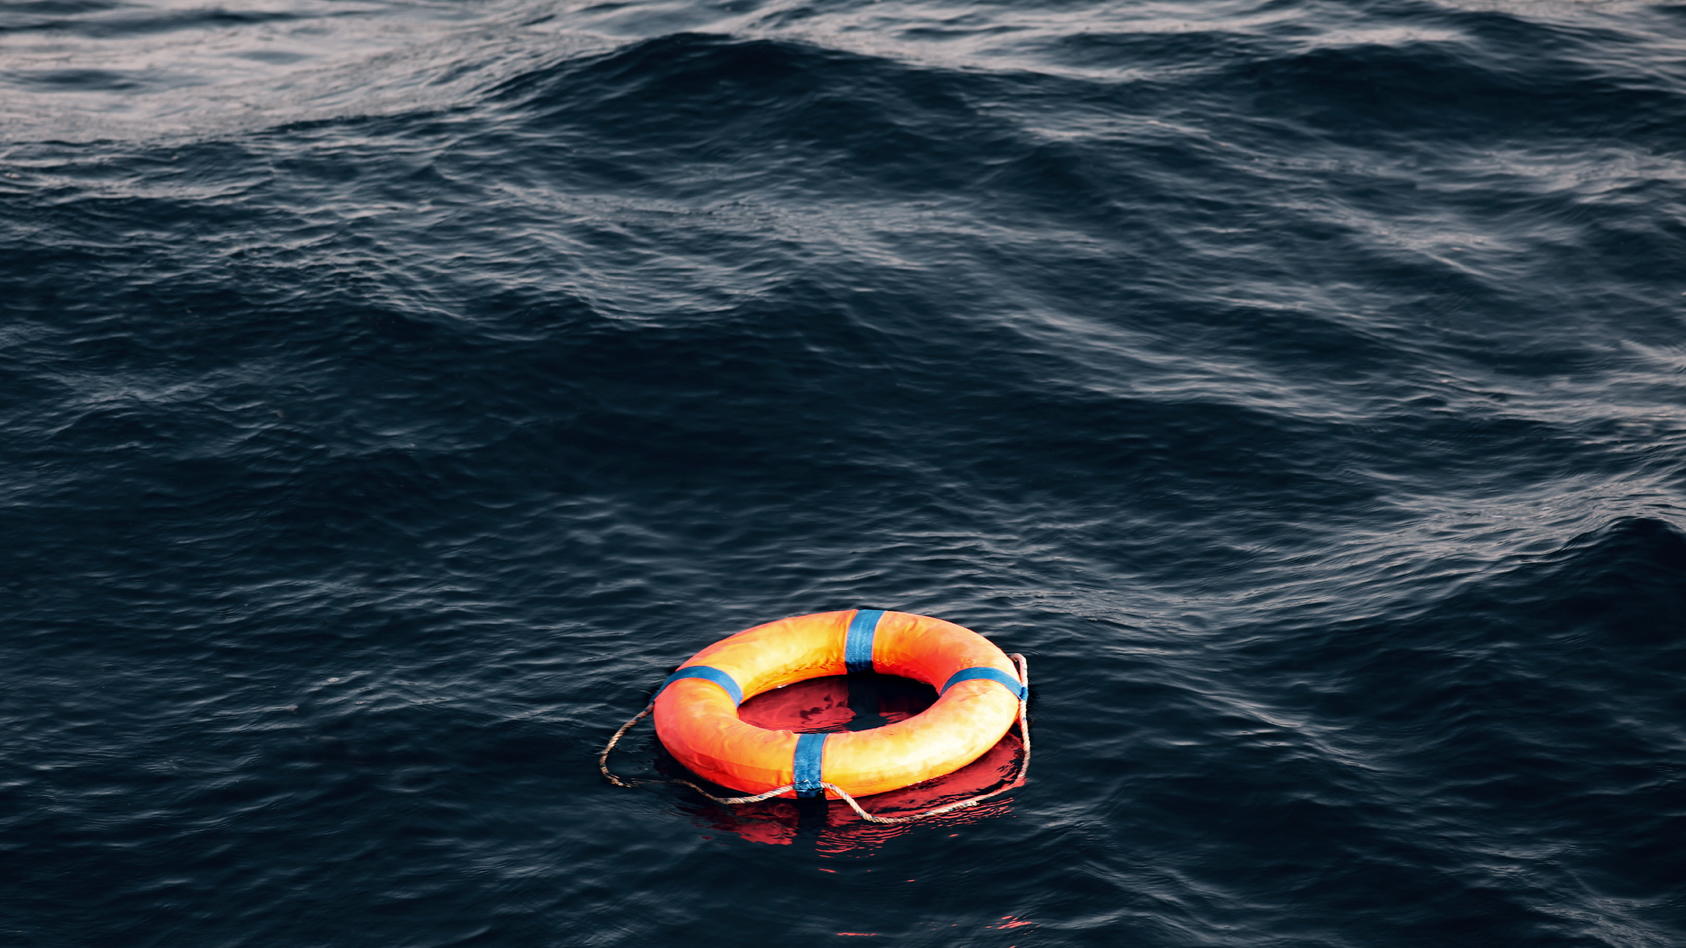 Die griechische Küstenwache soll einen gelähmten Flüchtling auf einem Floß im Mittelmeer ausgesetzt haben (Symbolbild).